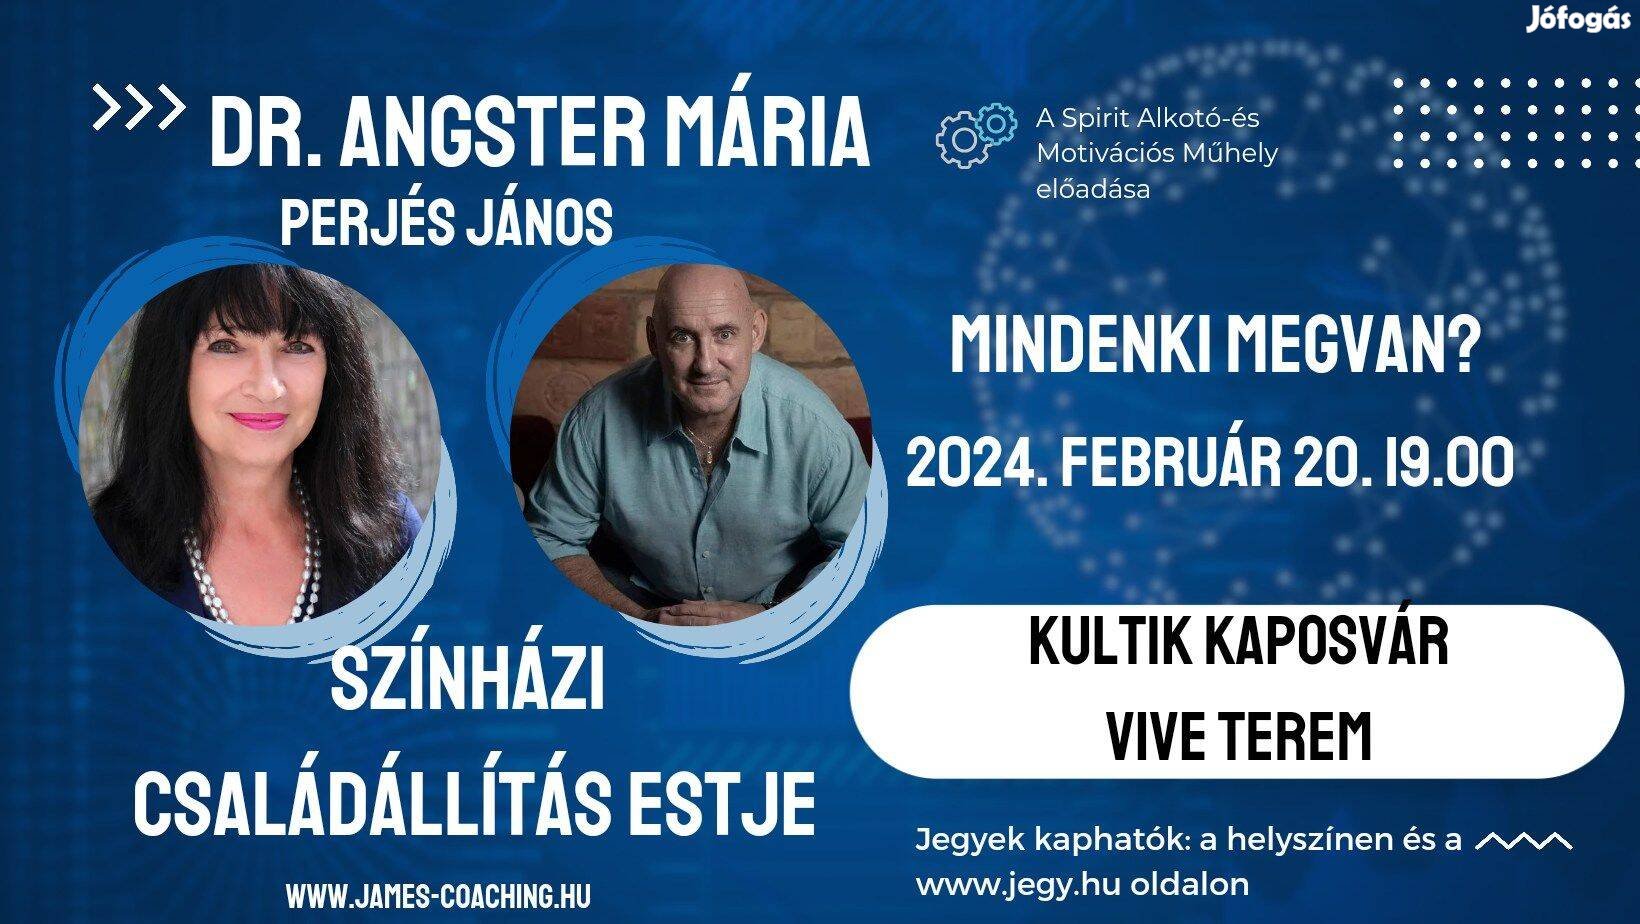 Dr Angster Mária családállító este Kaposváron - február 20